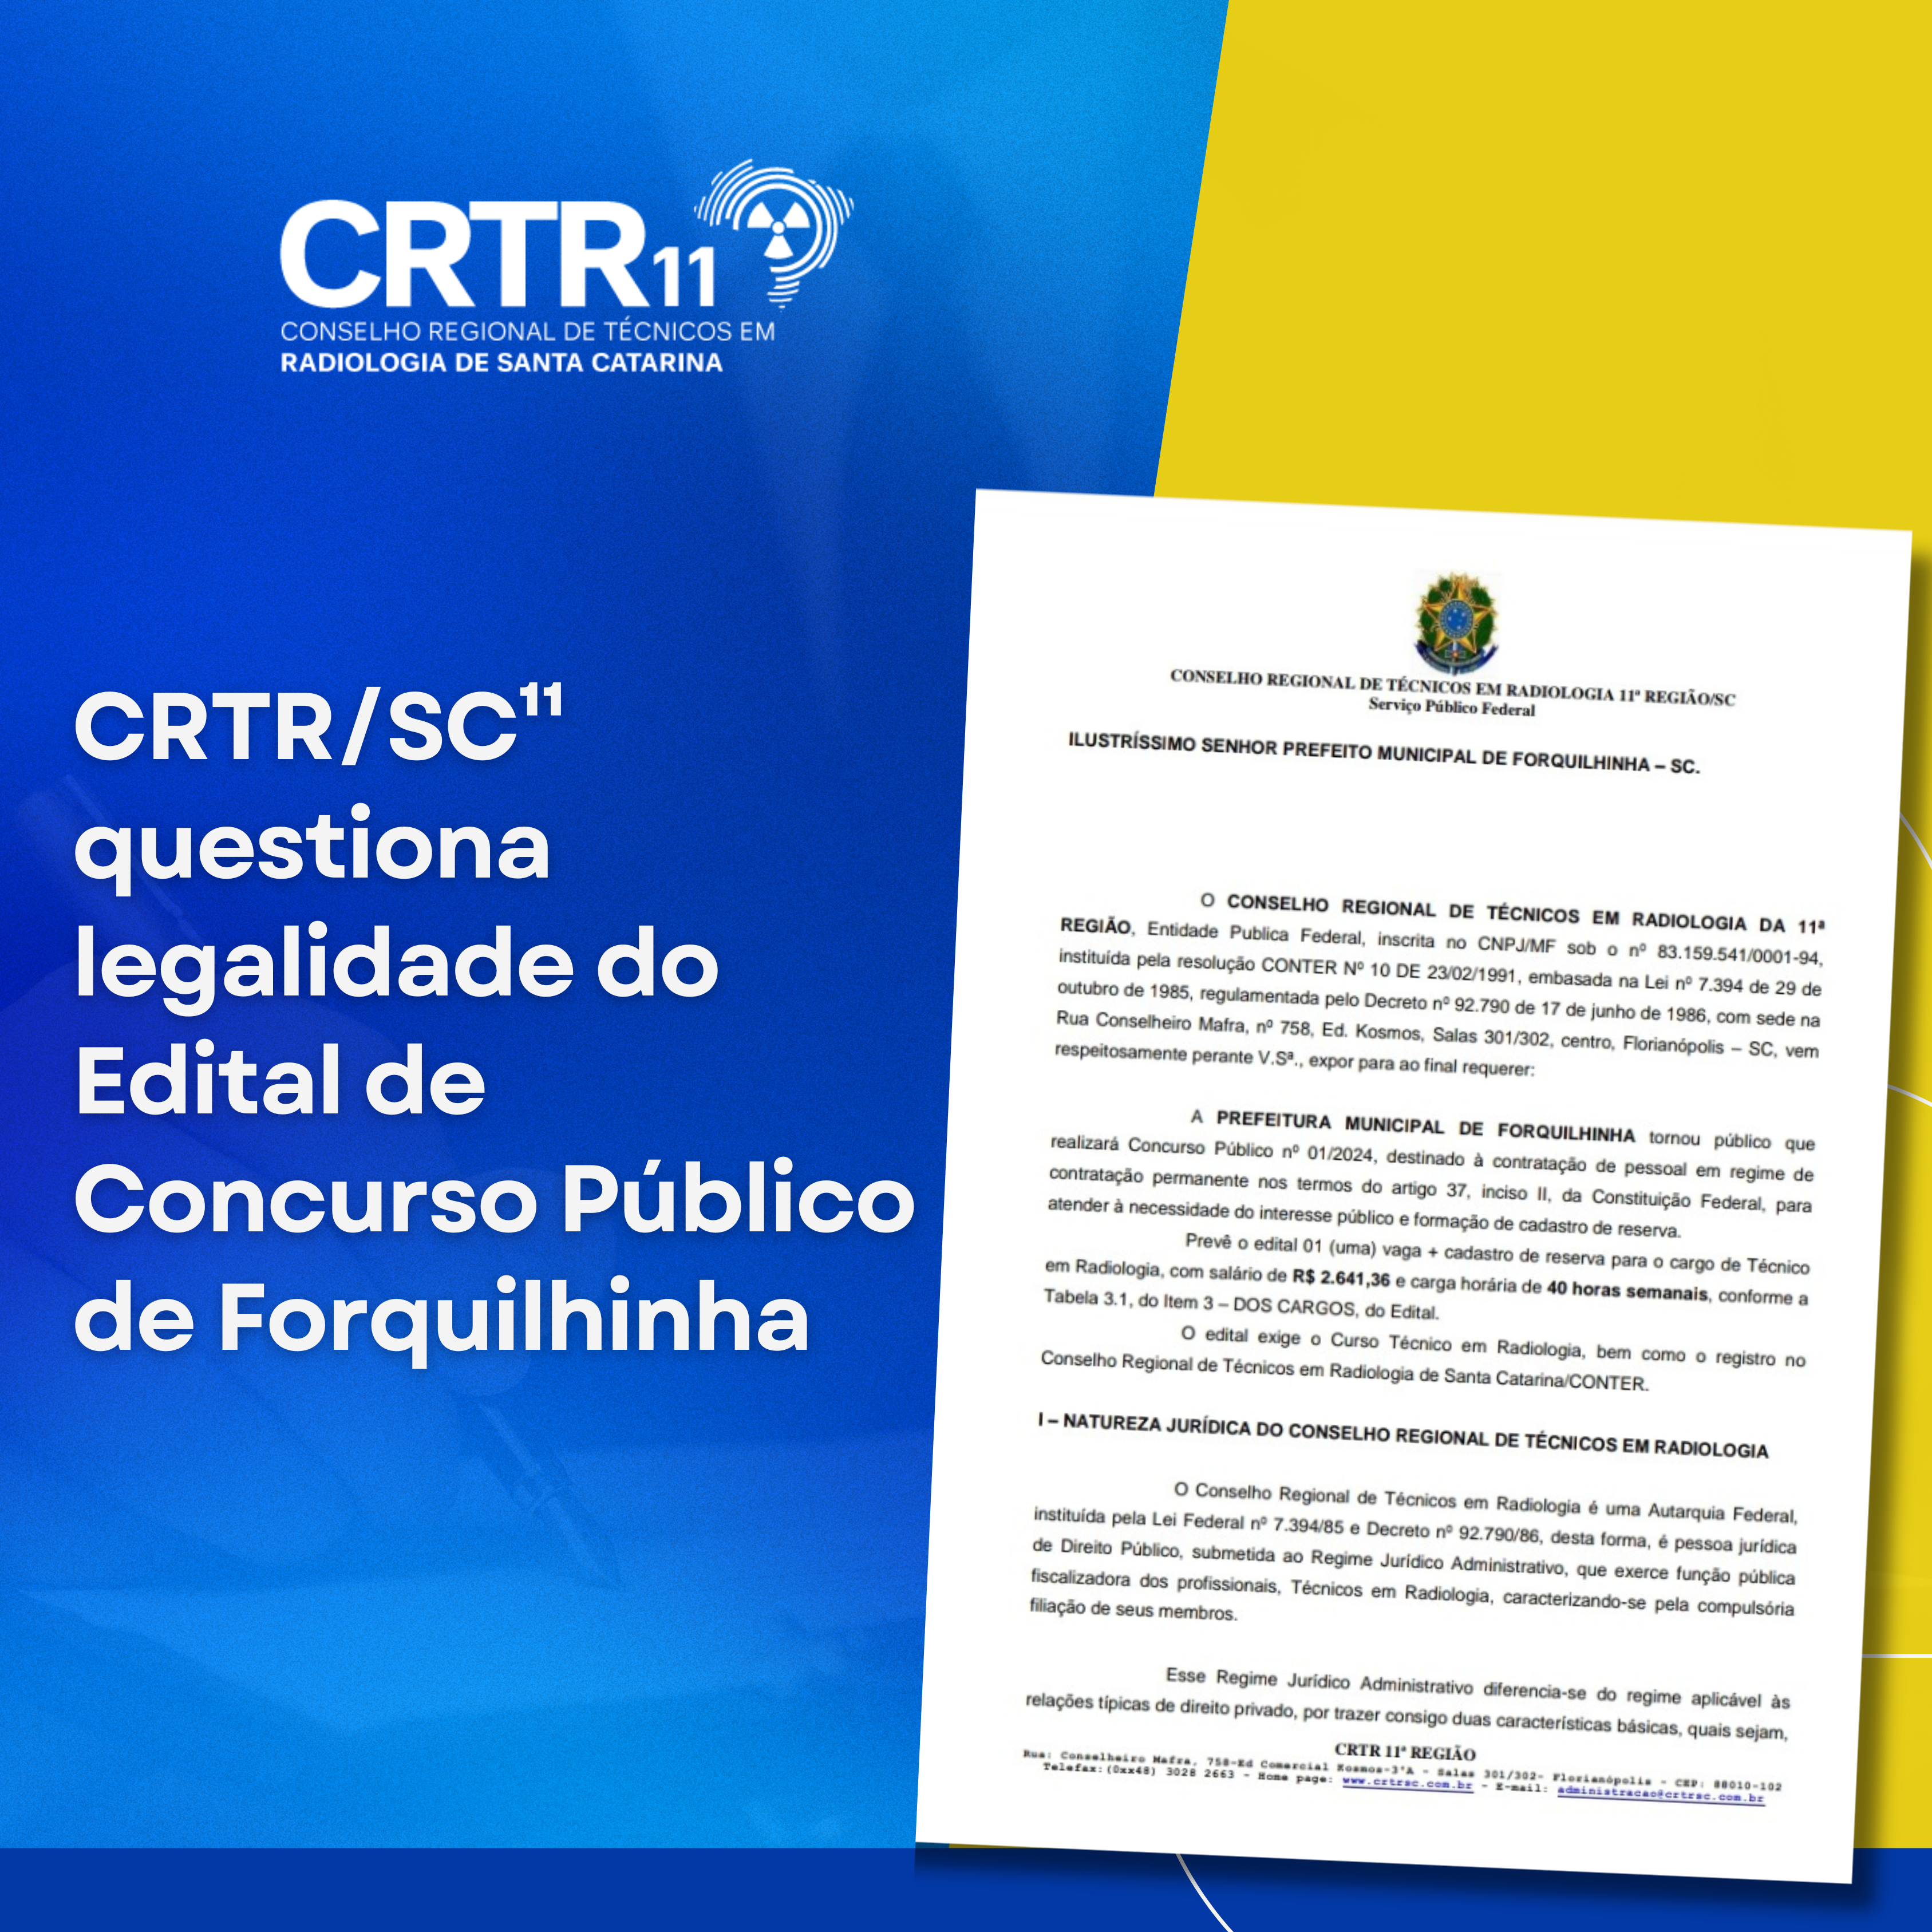 CRTR/SC¹¹ questiona legalidade do Edital de Concurso Público de Forquilhinha (SC)